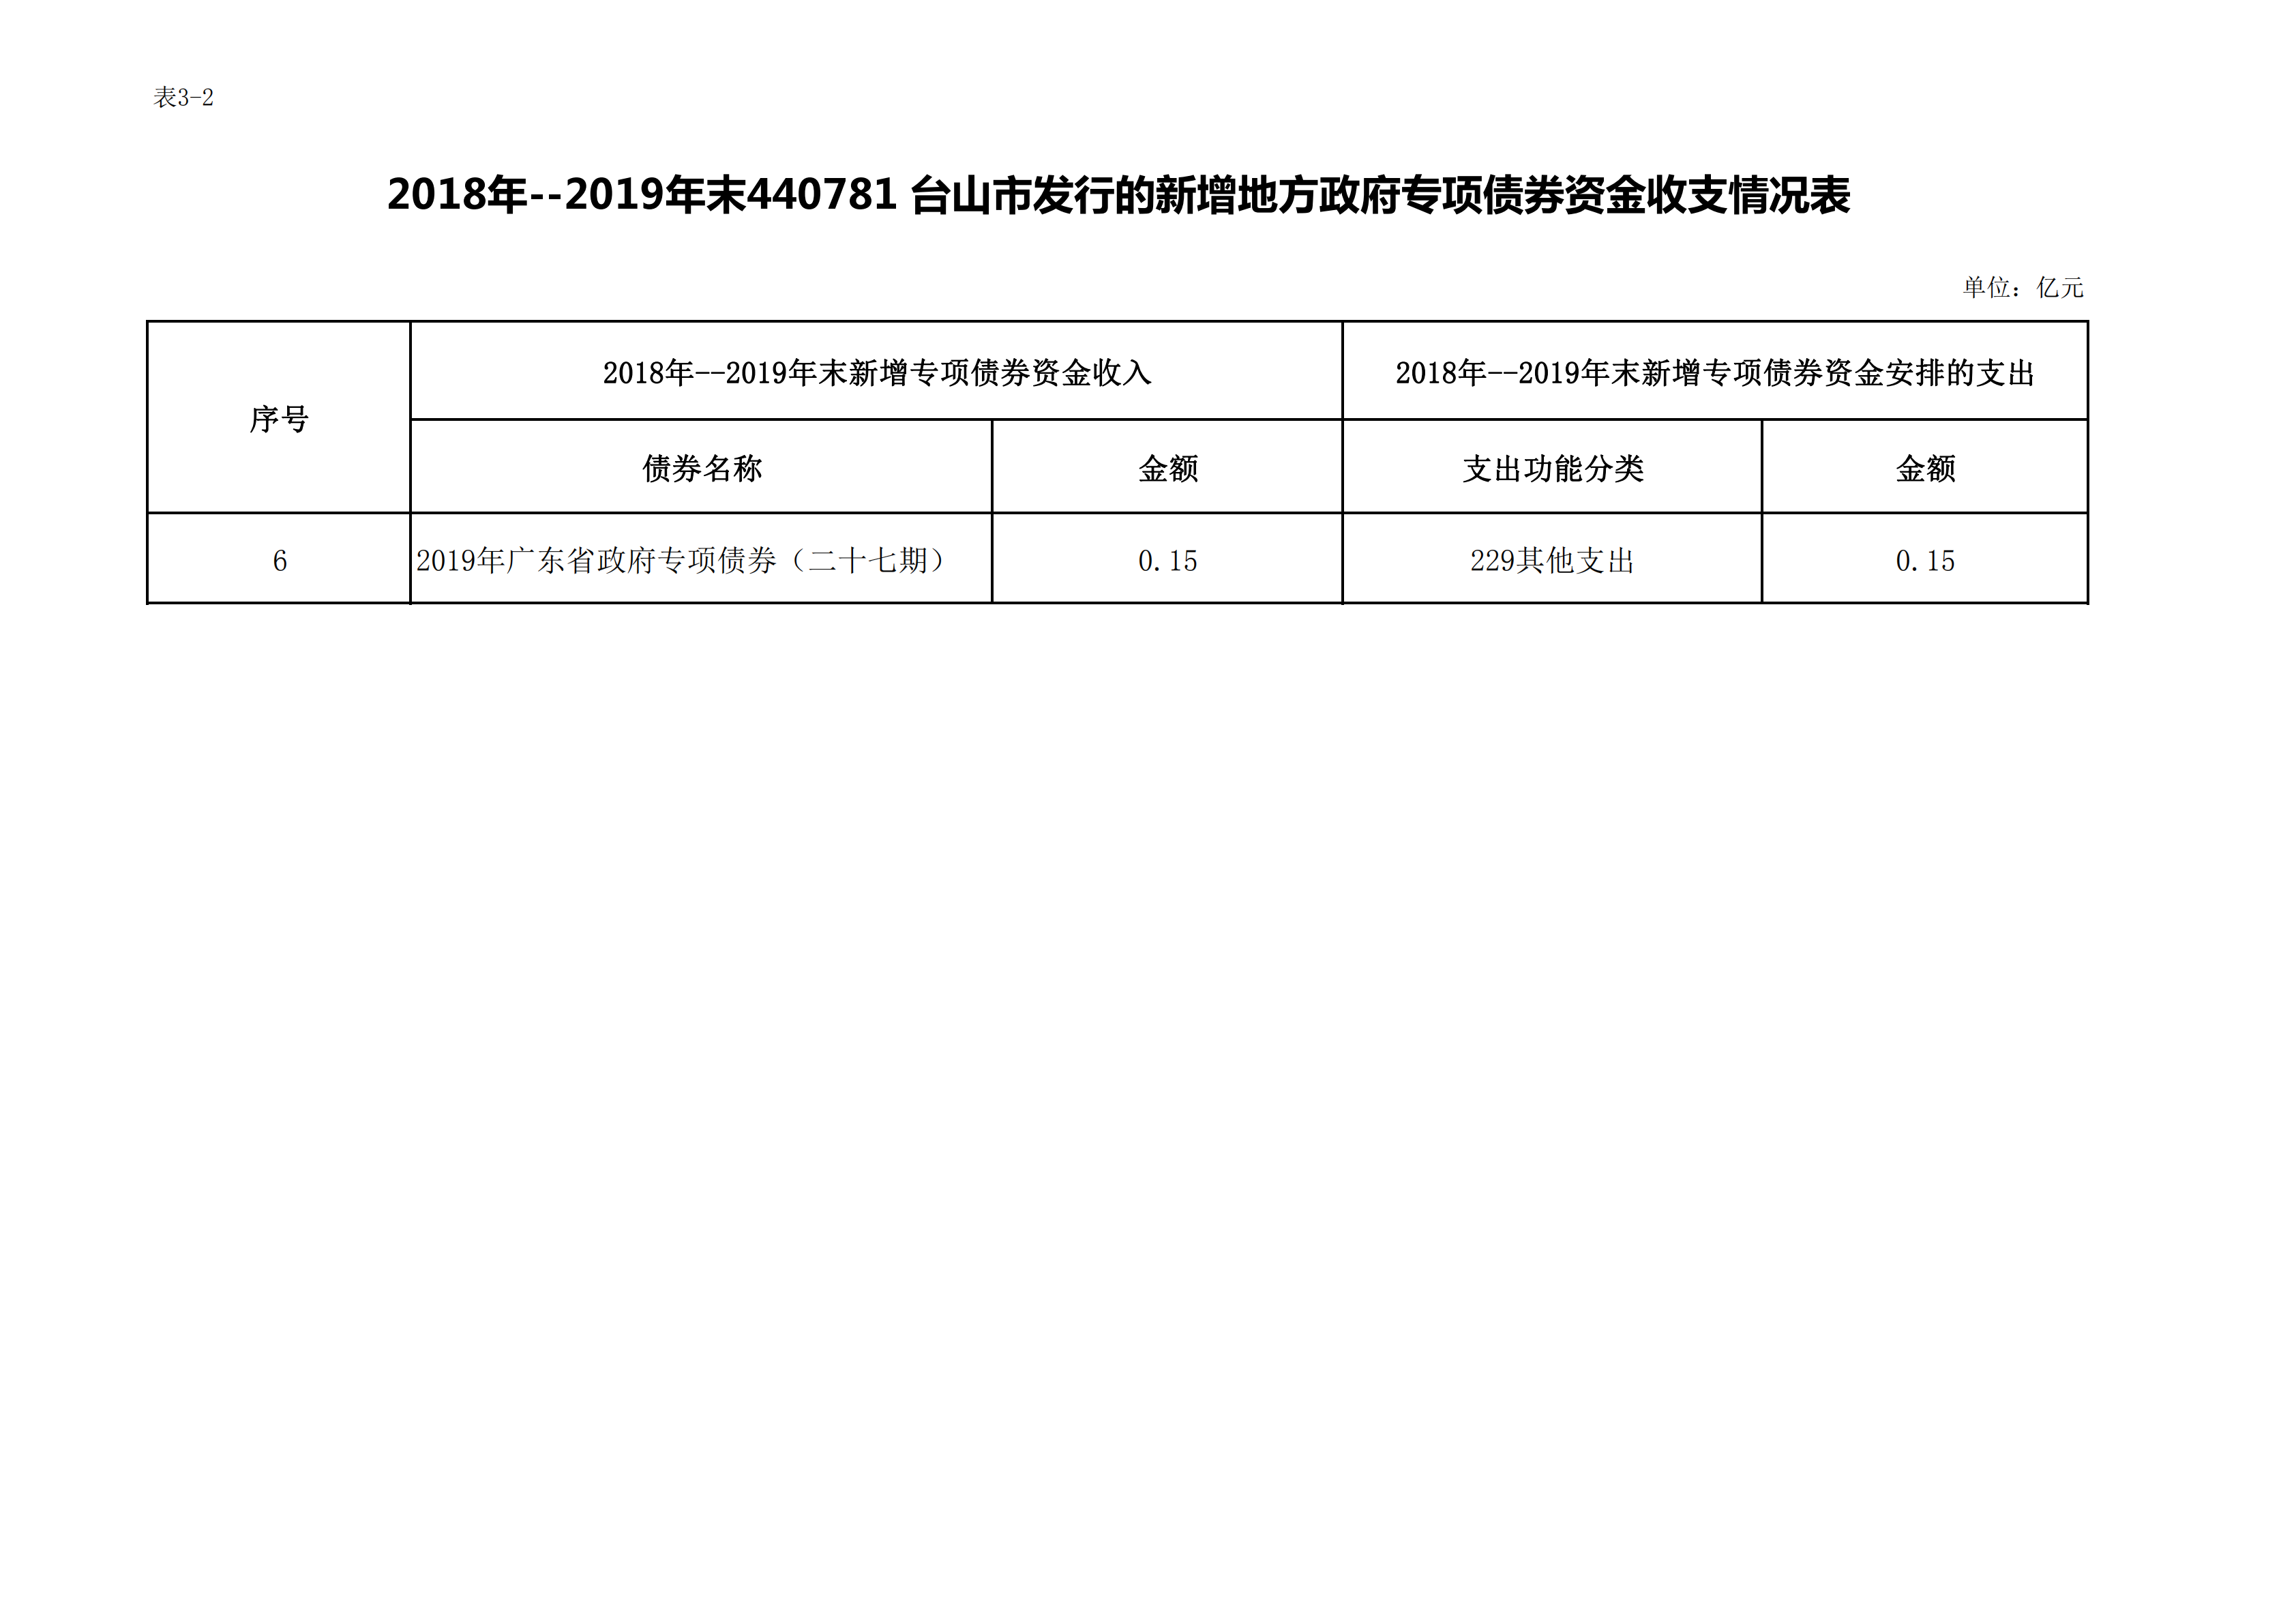 台山市2020年末地方政府债券存续期信息表_01.png